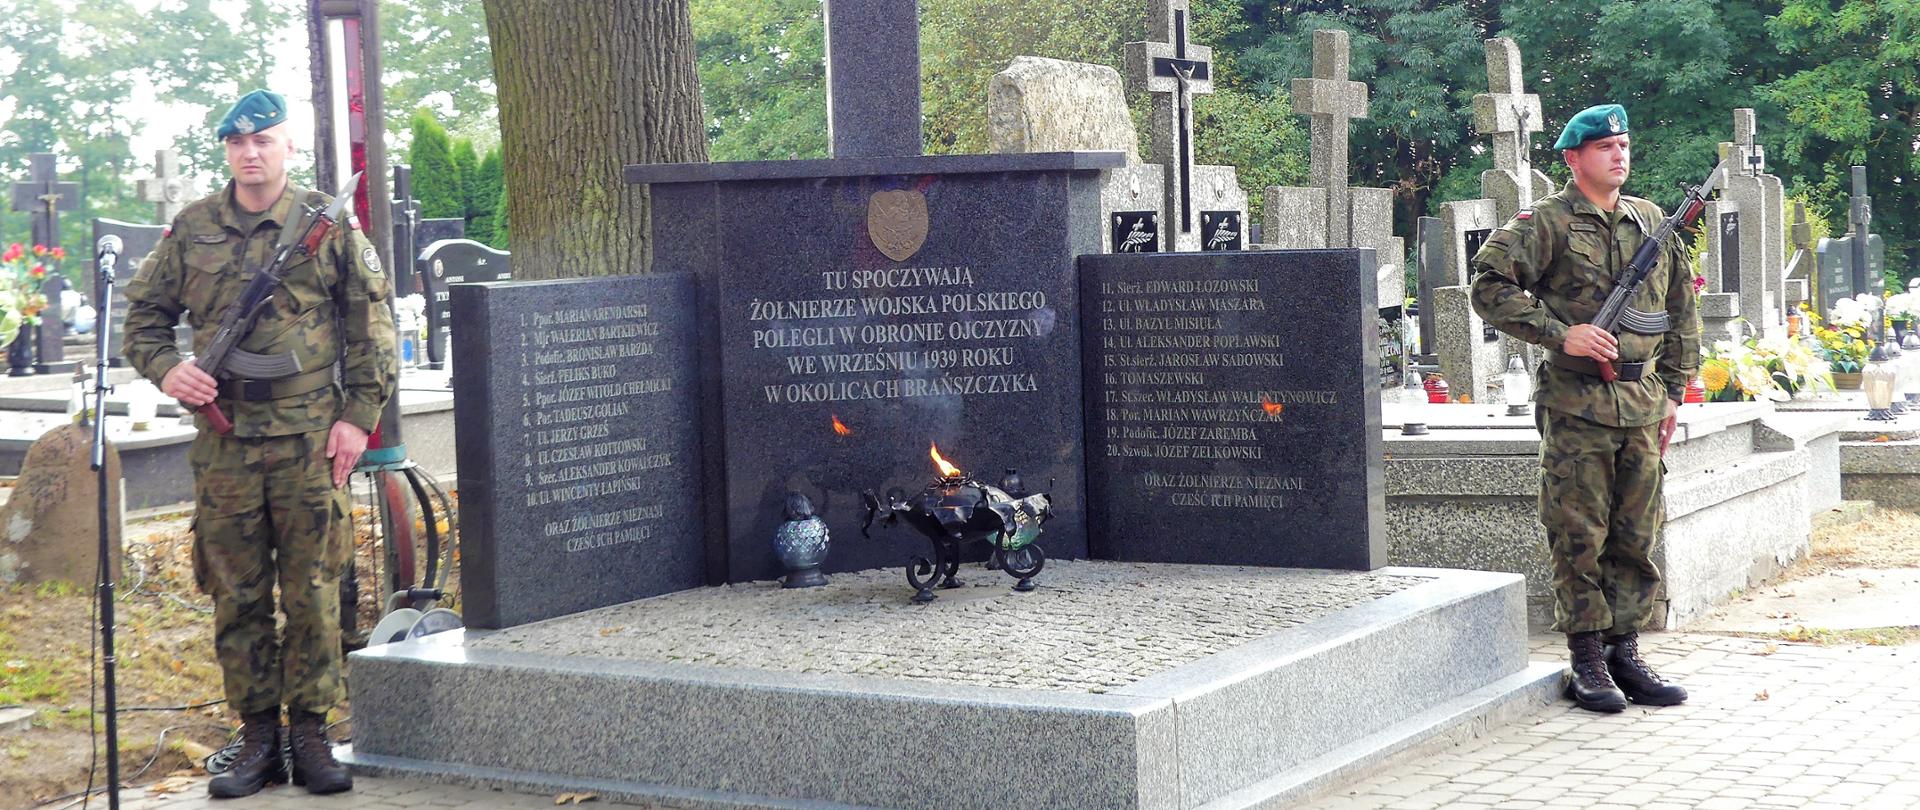 Dwóch żołnierzy stojących obok zbiorowej mogiły żołnierzy poległych w obronie ojczyzny we Wrześniu 1939 roku w okolicach Brańszczyka. W tle inne mogiły zmarłych osób.